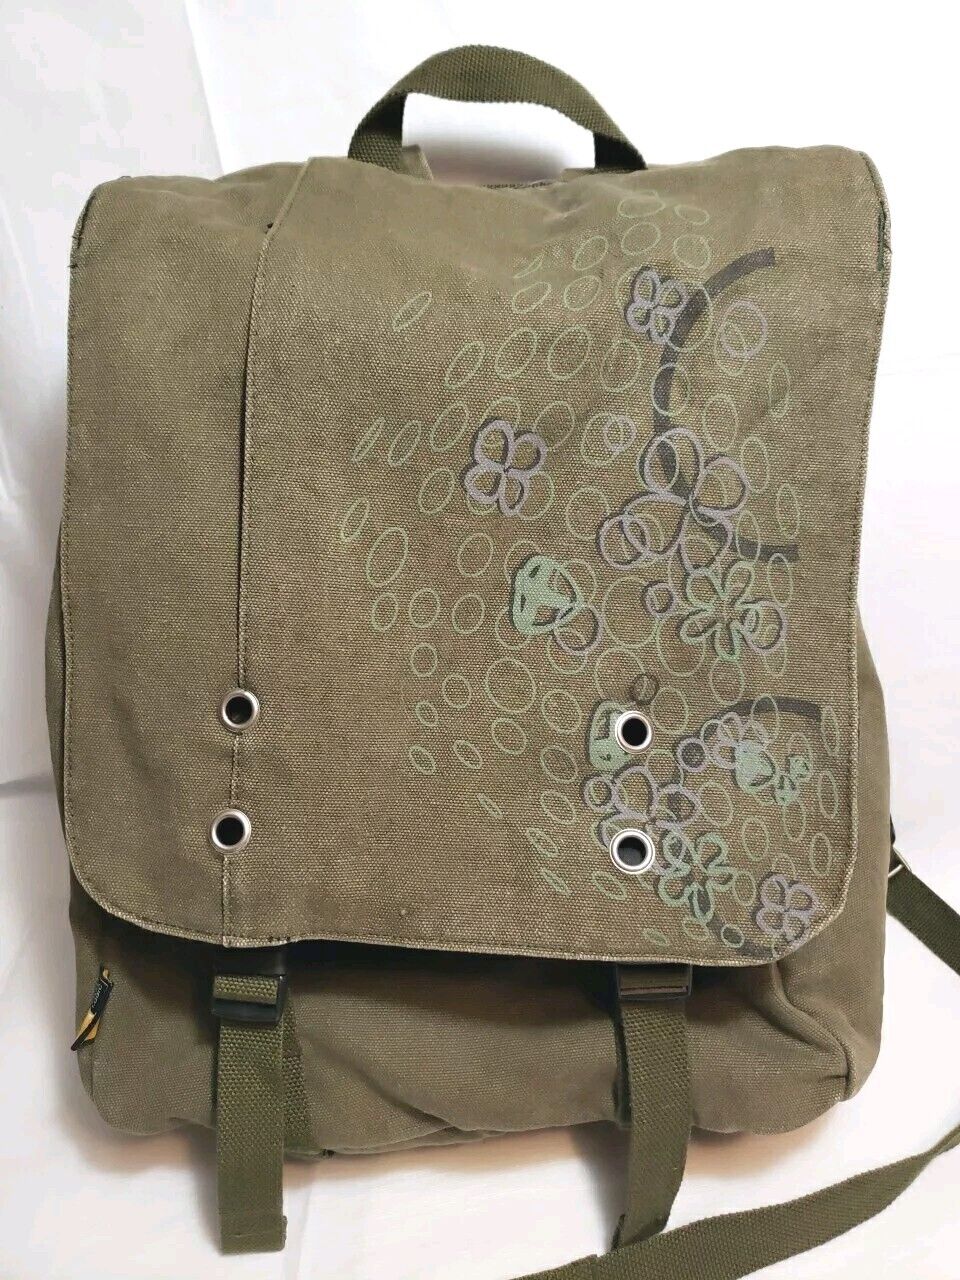 Case Logic Laptop Bag Backpack Messenger Bag Military Green Canvas 